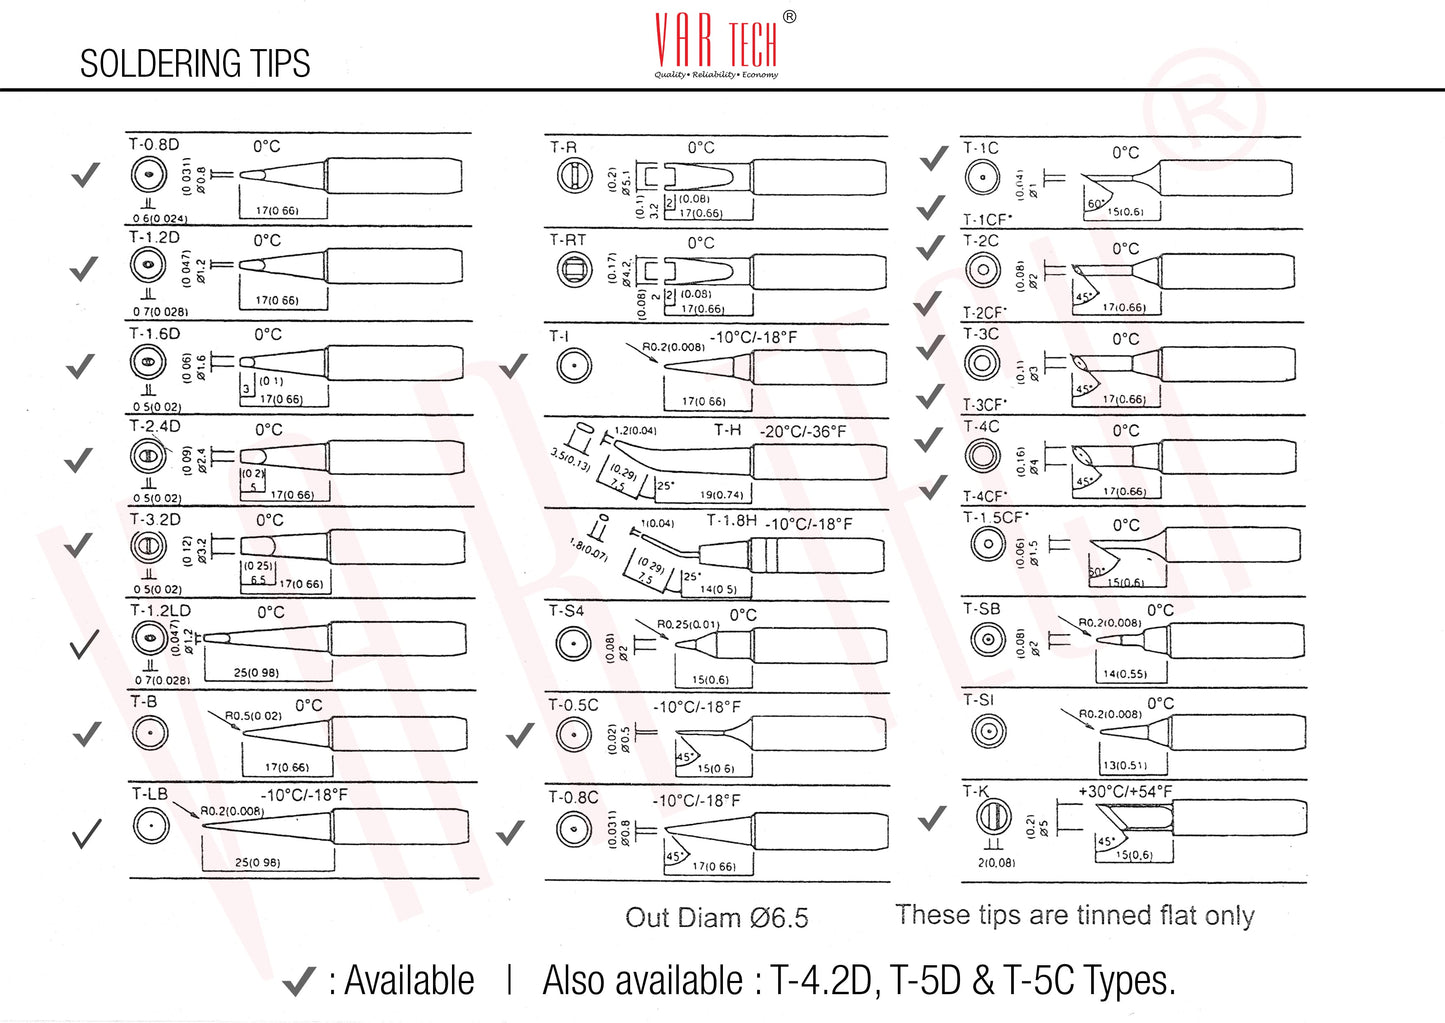 Soldering station bits - Pack of 1 (T-C Series, Chisel Tip) 0.5 C, 0.8C, 1C, 2C, 3C, 4C, 5C